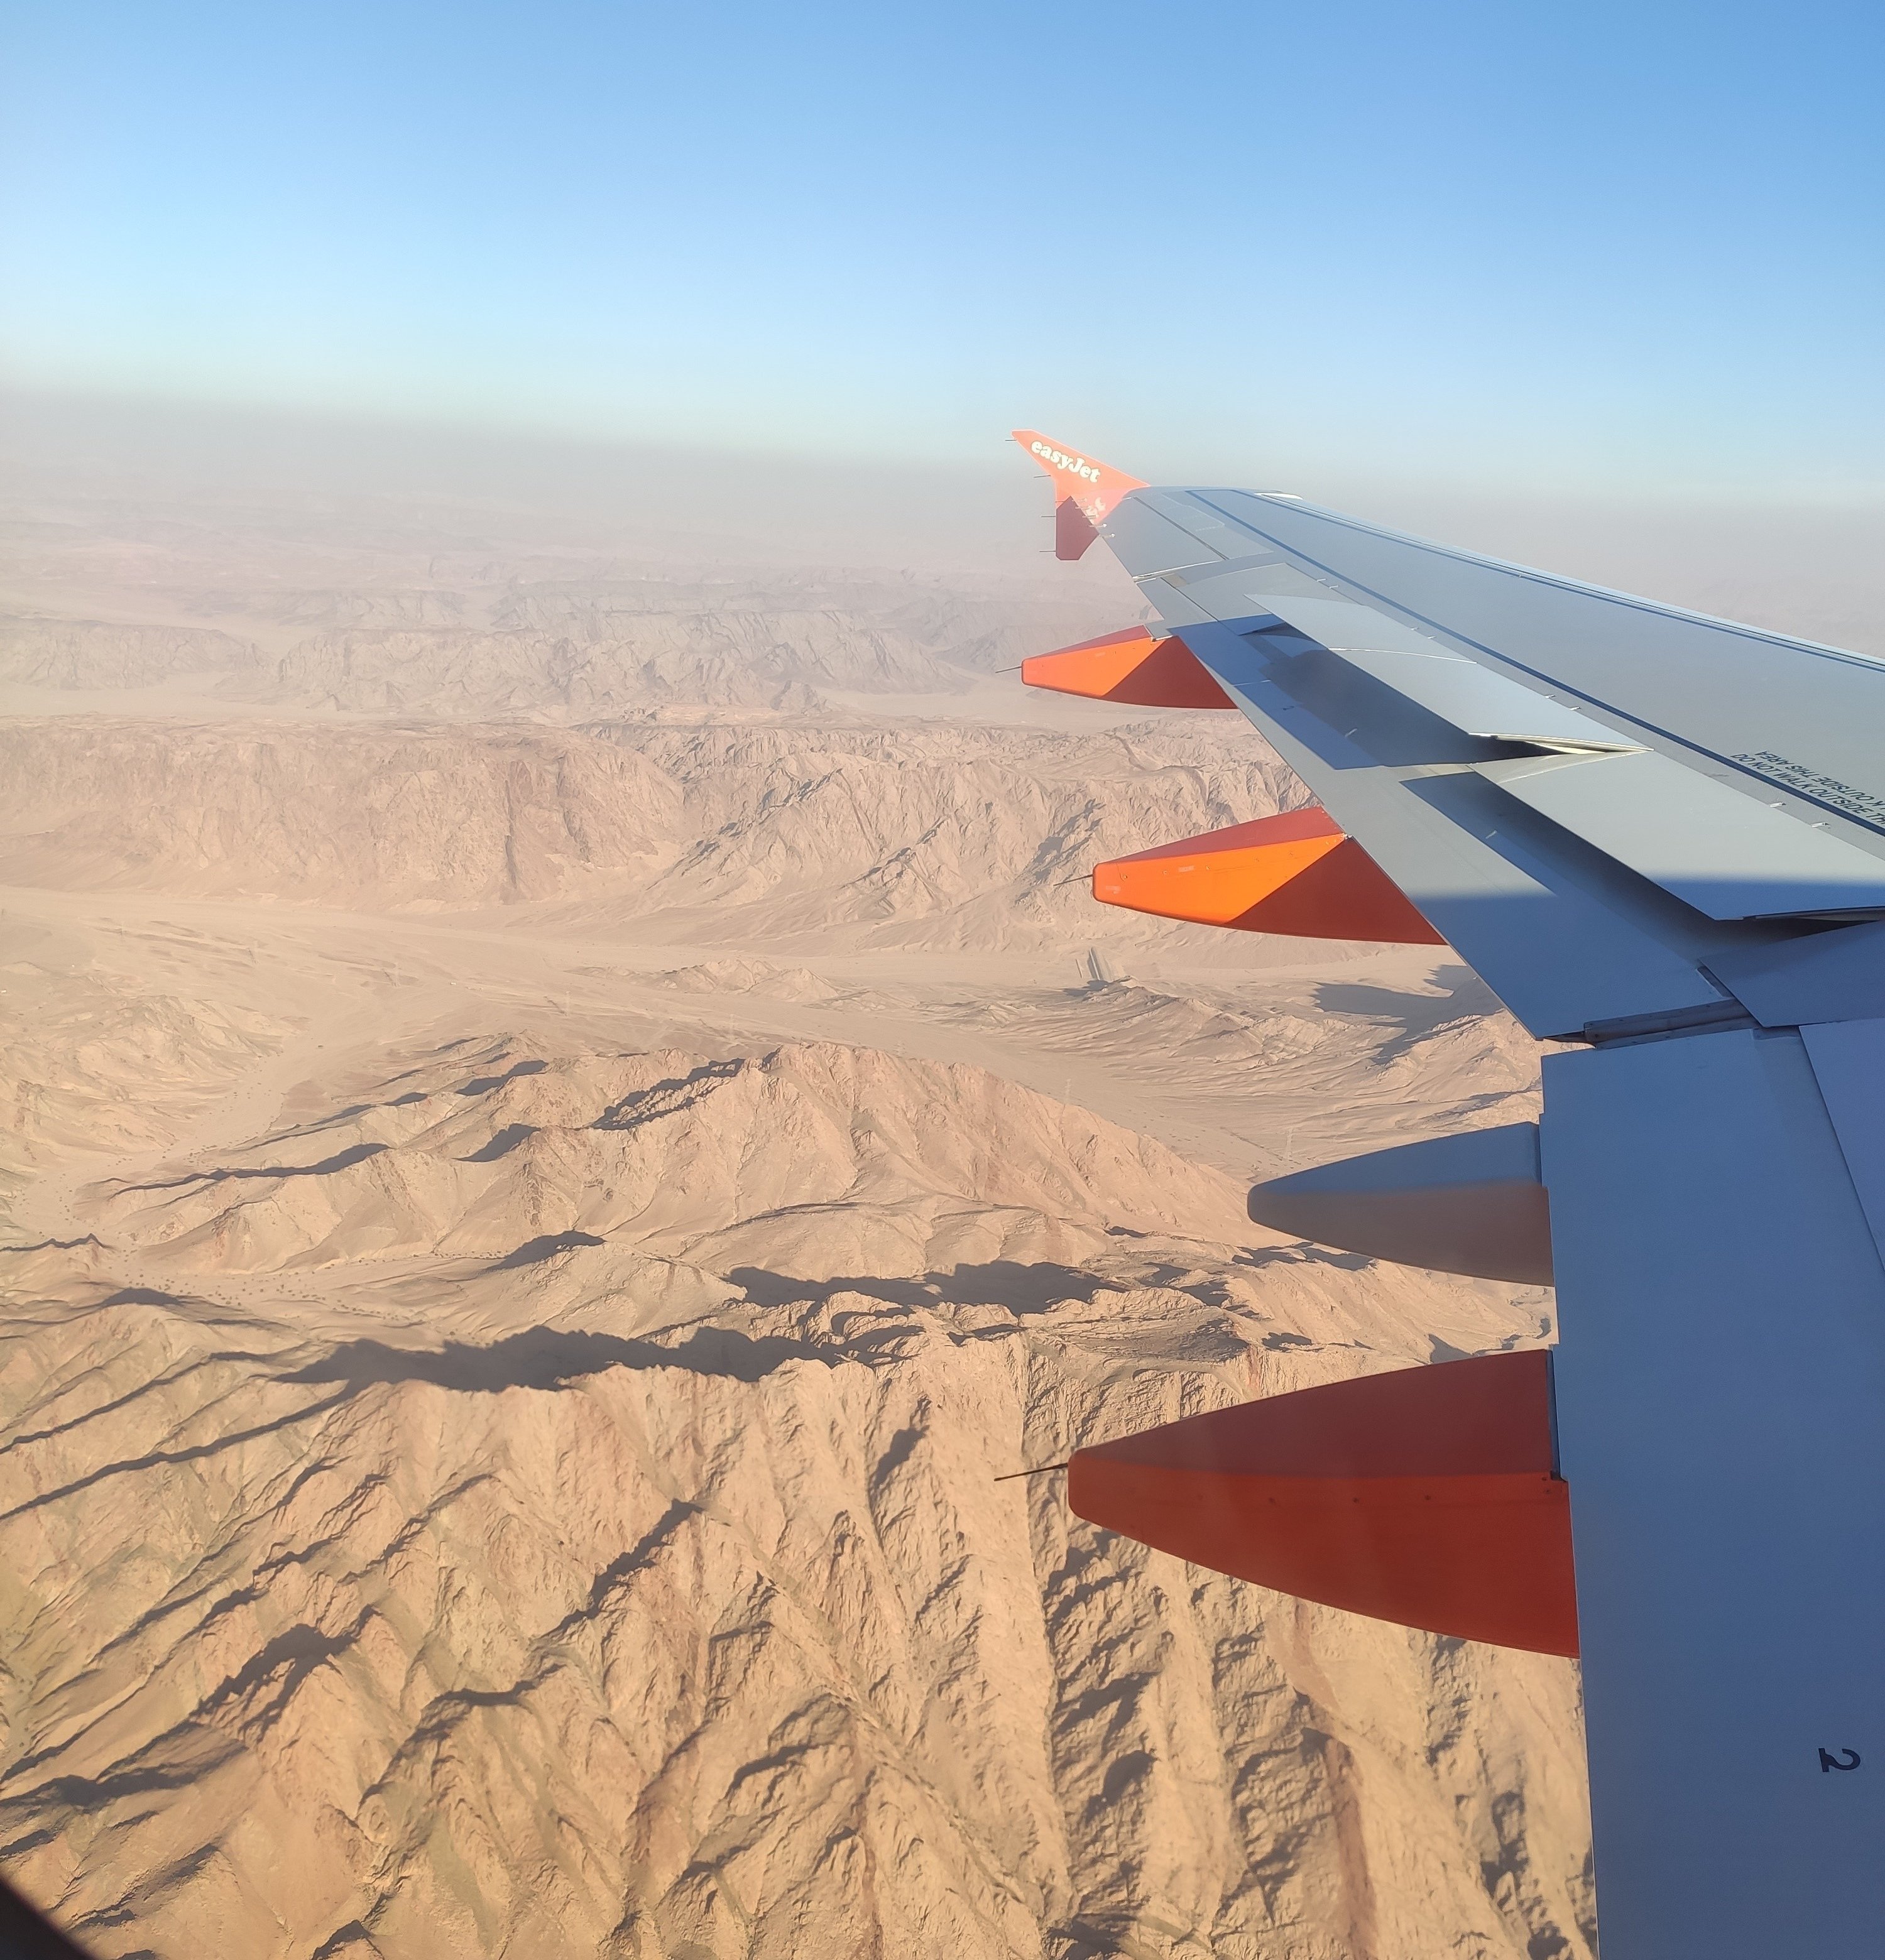 Reisebericht Jordanien Rundreise mit Kindern - Anreise nach Jordanien mit dem Flugzeug über die Wüste